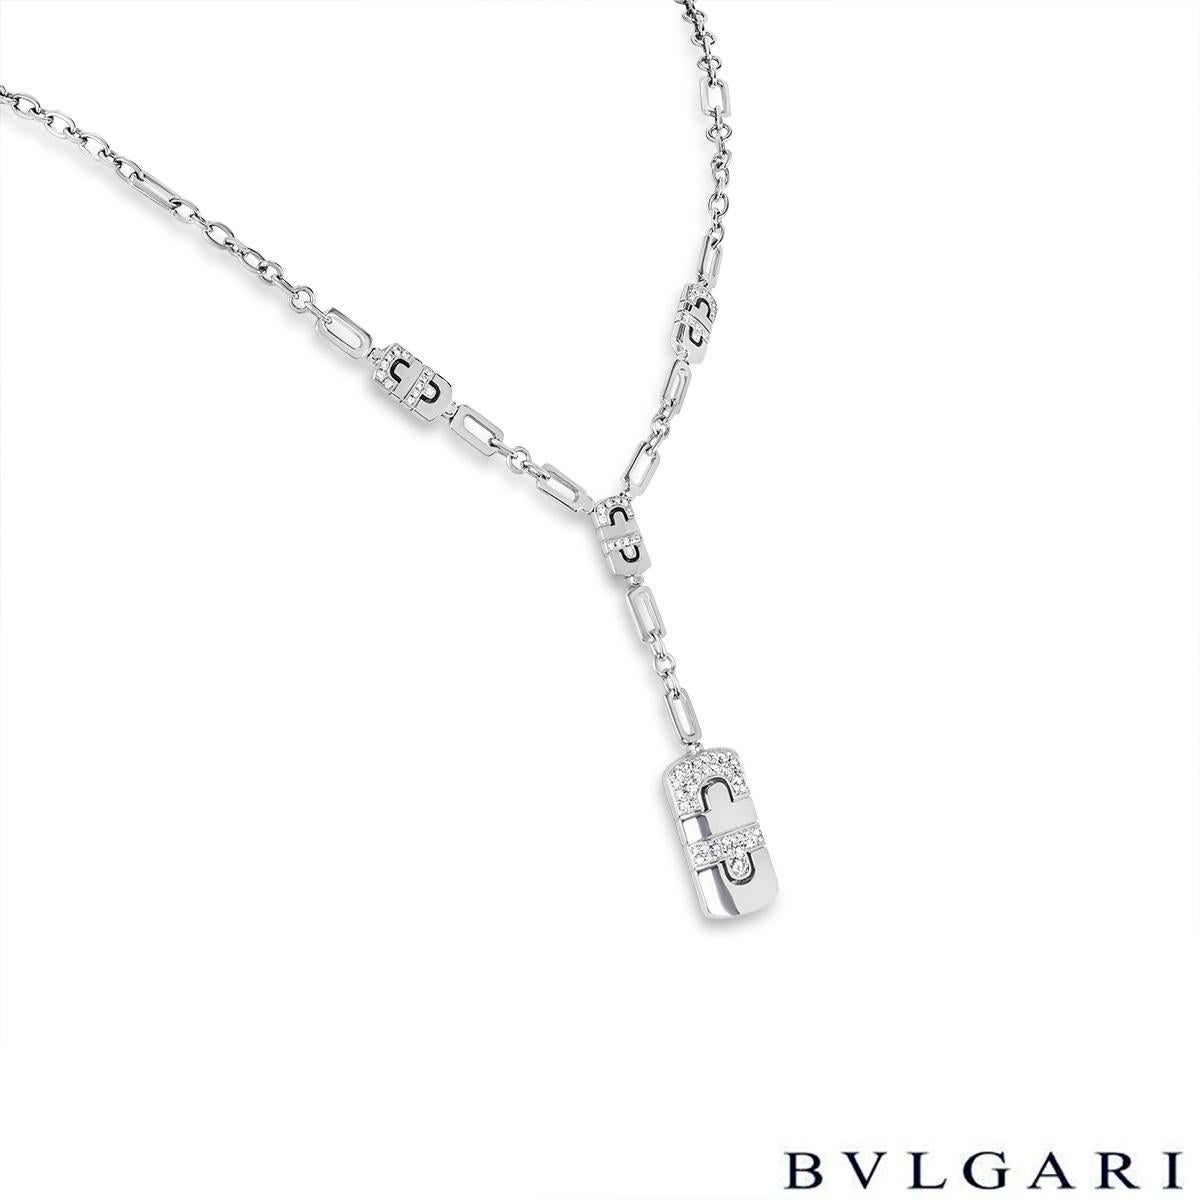 Magnifique collier de diamants en or blanc 18 carats de Bvlgari, issu de la collection Parentesi. Le collier est de style lariat avec un grand pendentif Parentesi serti de diamants et trois mini stations Parentesi serties de diamants. Les 68